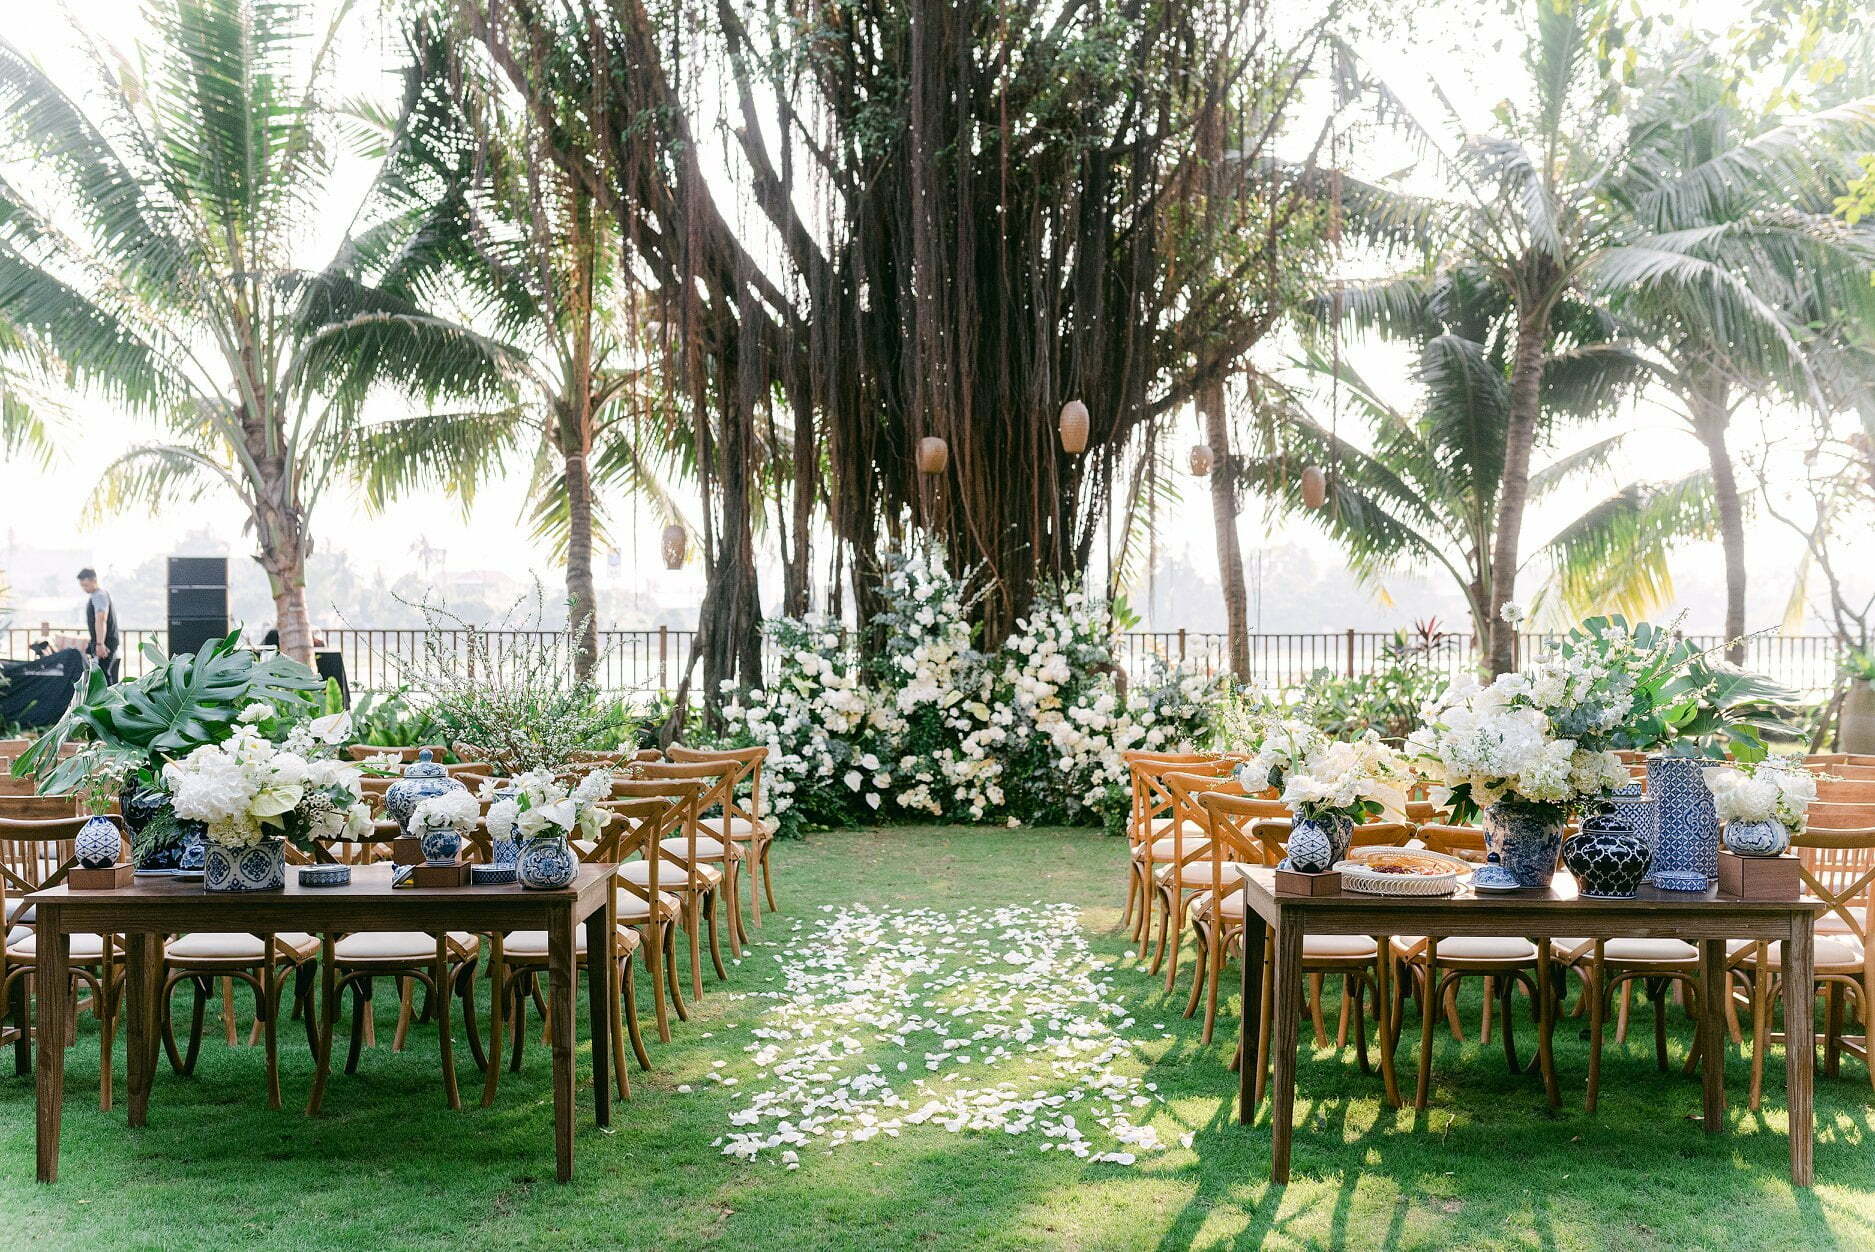 The dreamy outdoor wedding at An Lam Retreats Saigon River